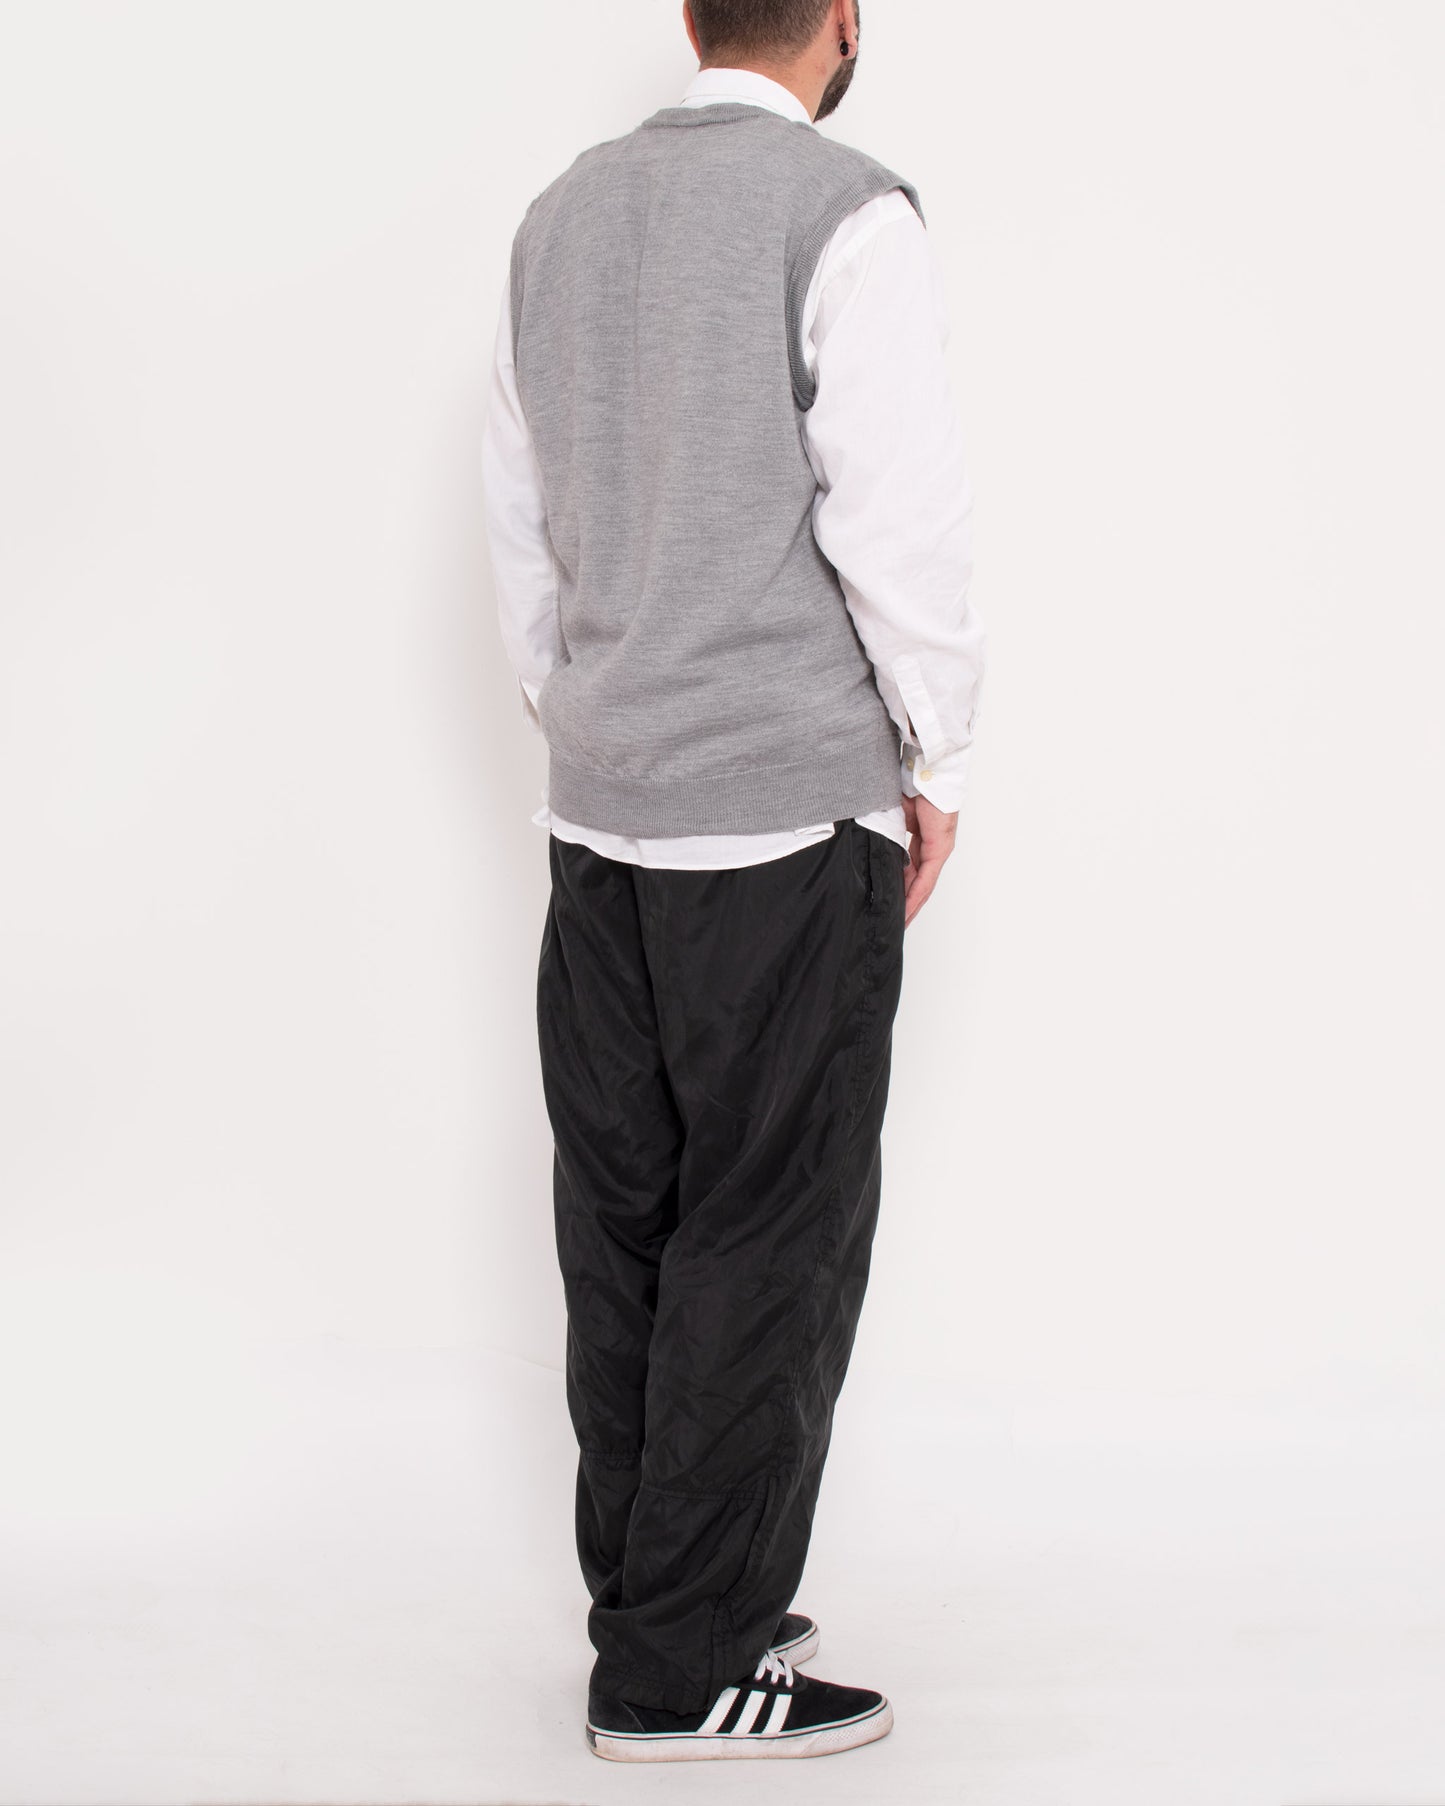 Knitted V-Neck Gilet Vest Grey